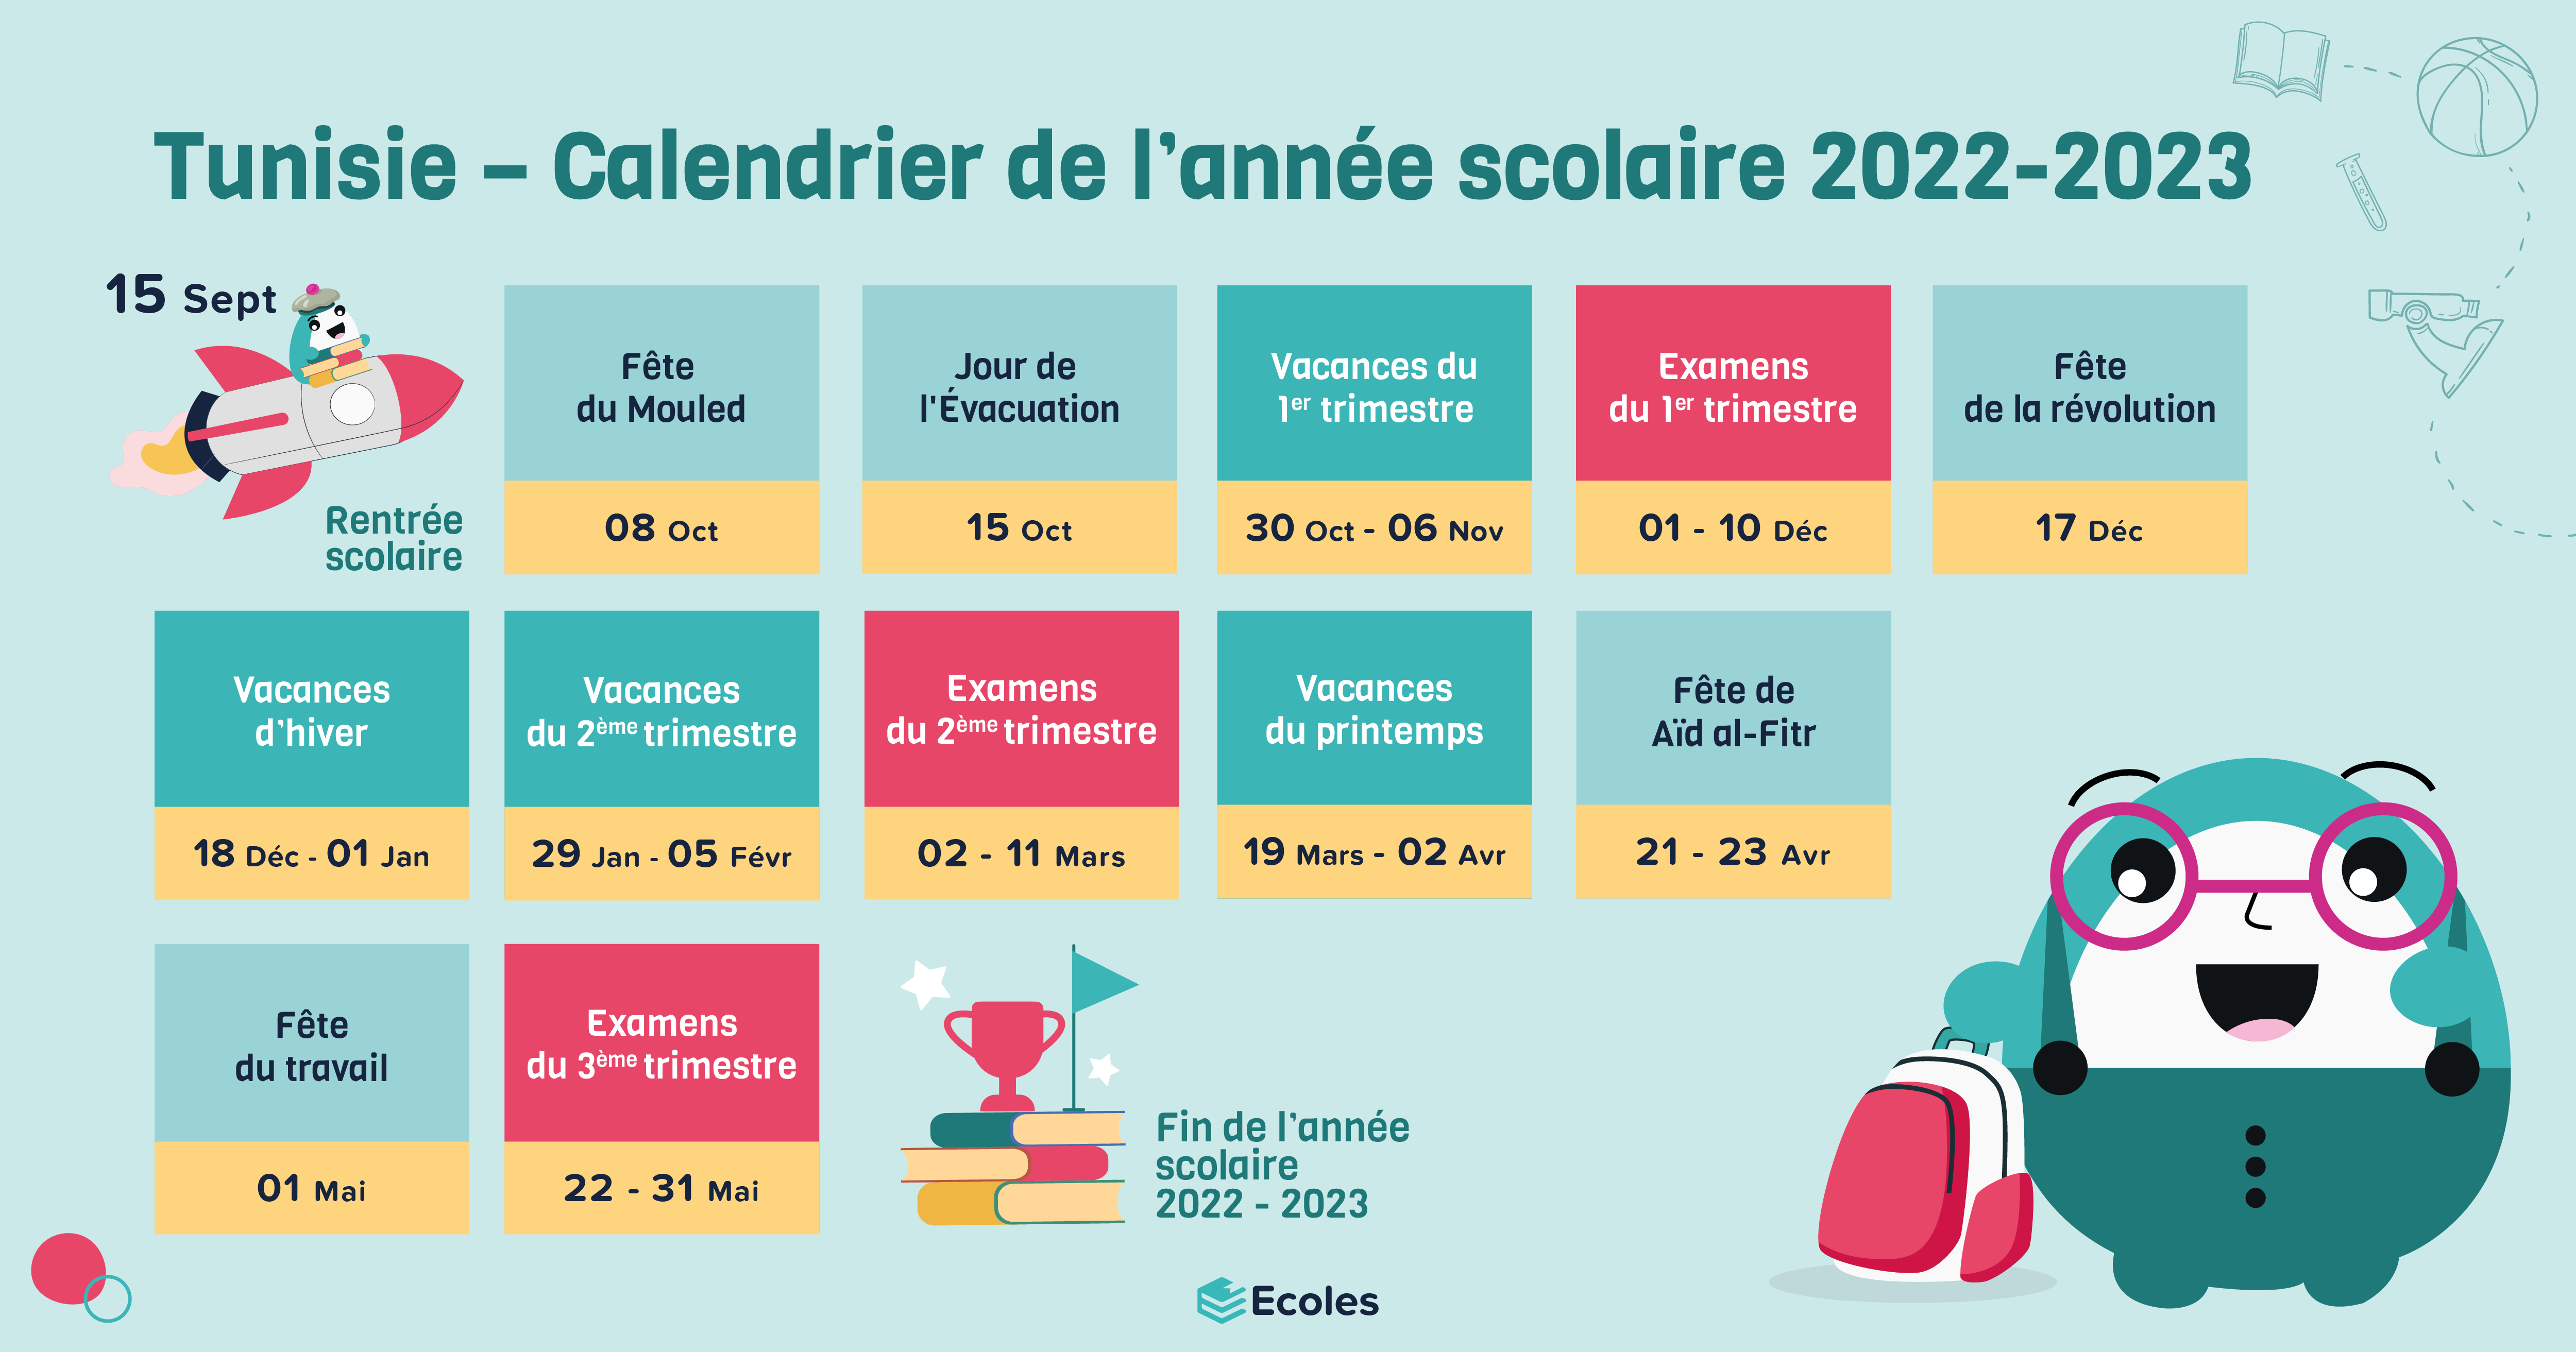 Tunisie - Calendrier de l'année scolaire 2022 - 2023